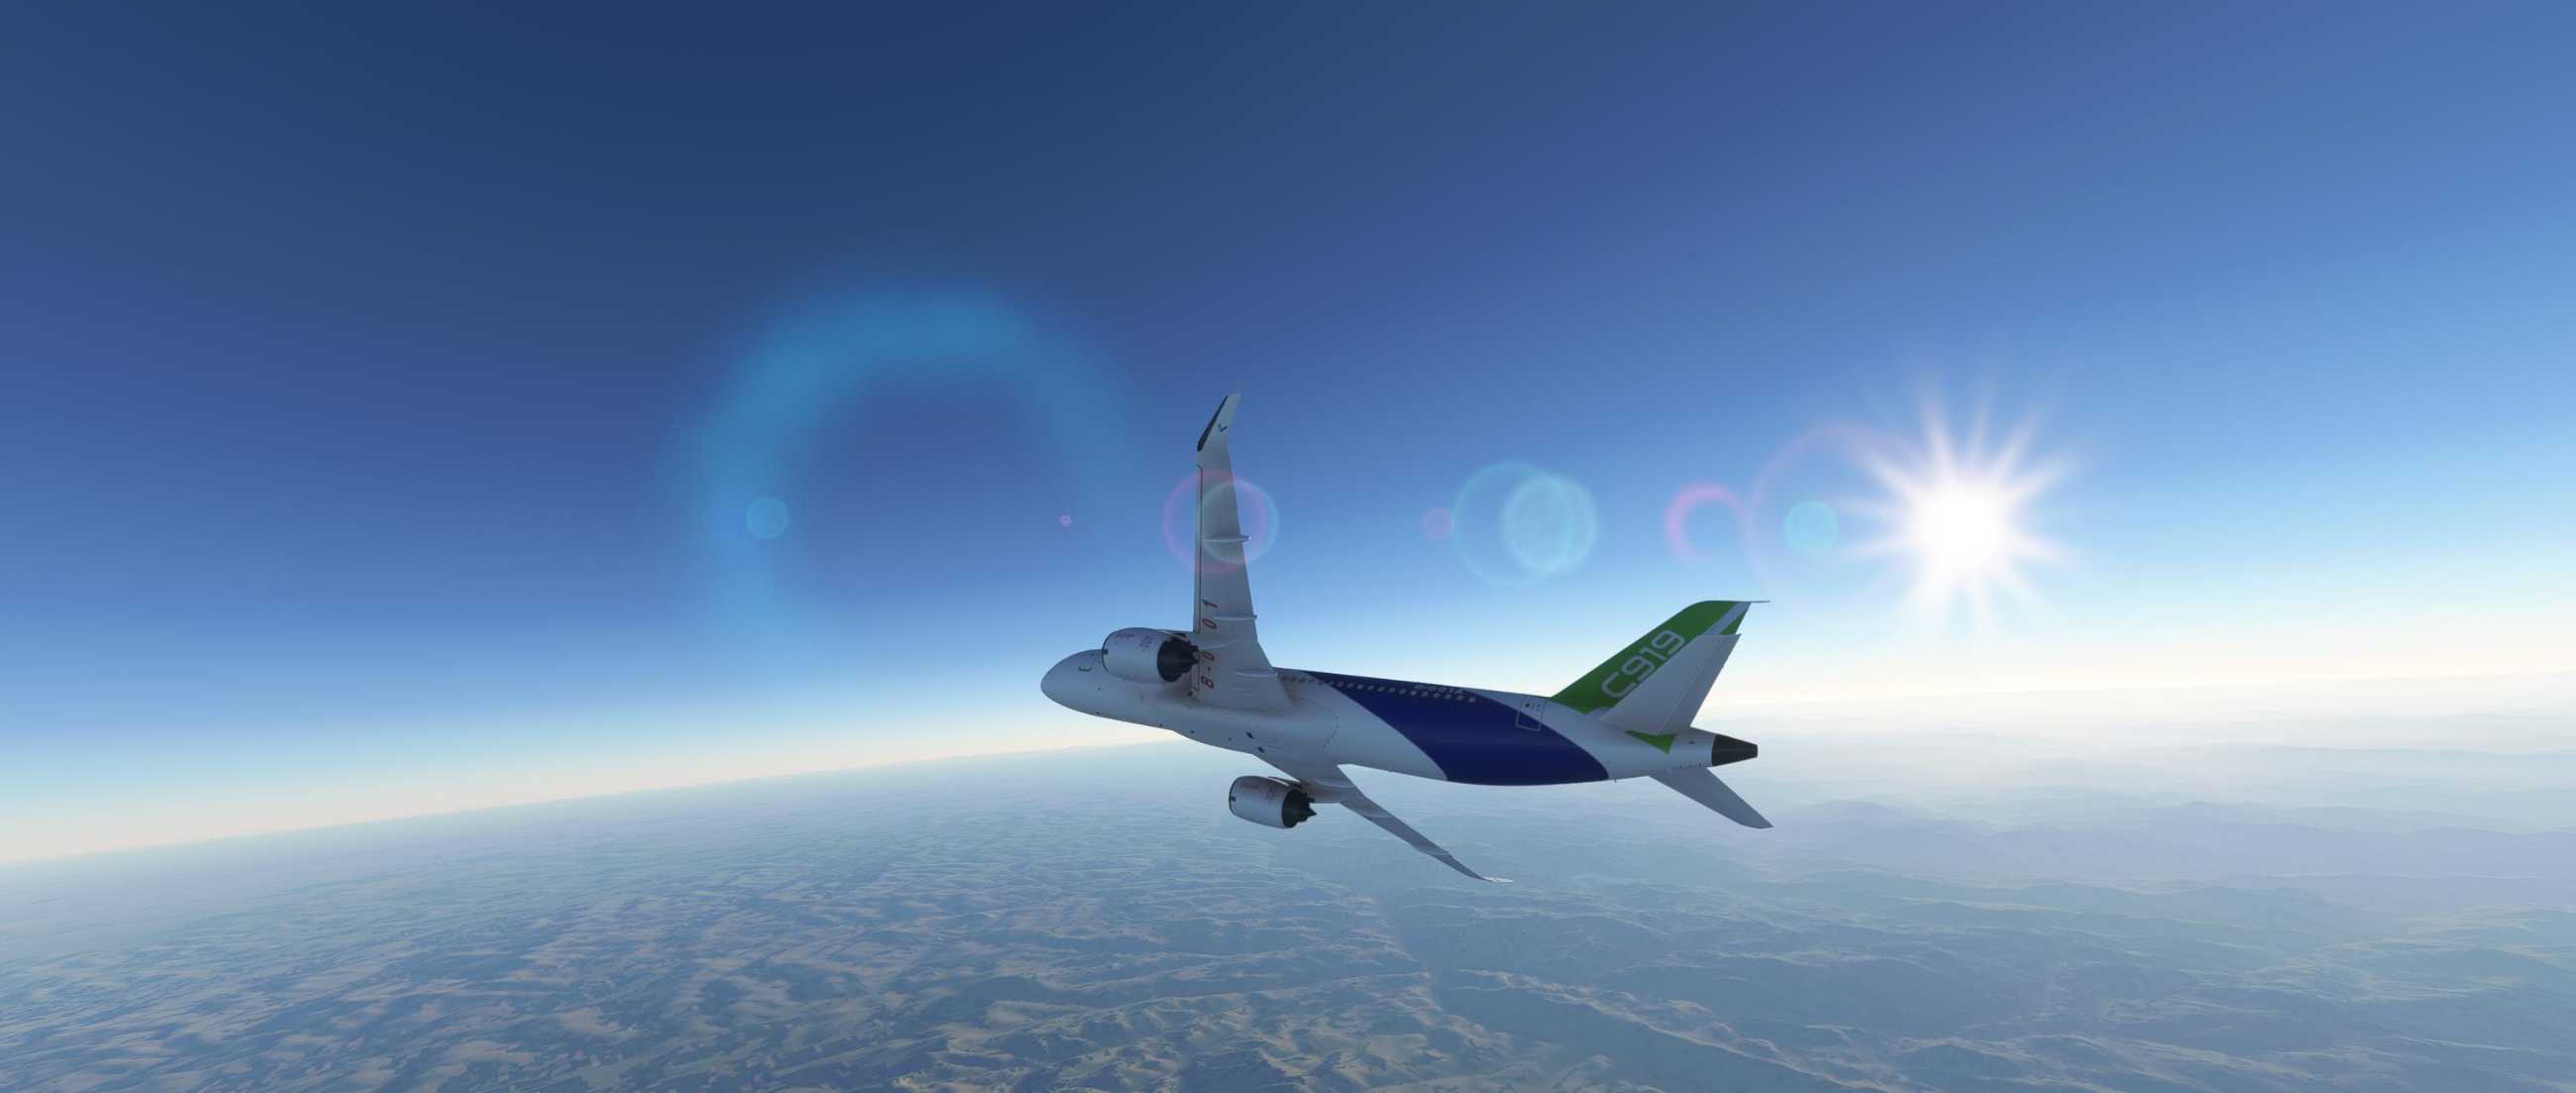 FYCYC-C919 国产大飞机机模 微软模拟飞行演示-1703 